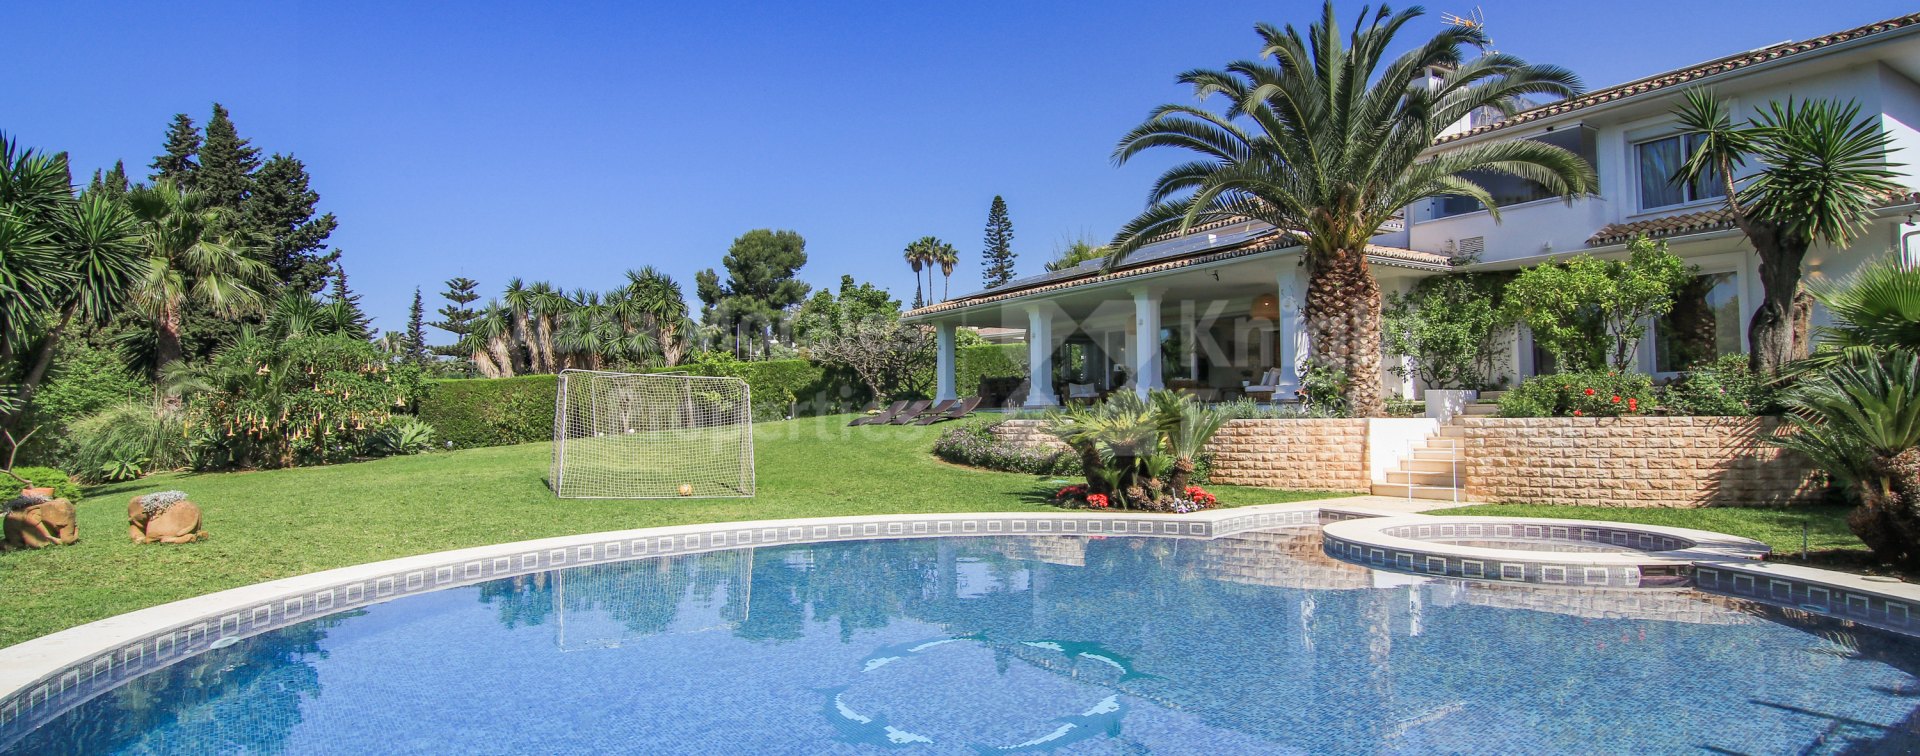 Marbella Goldene Meile, Villa zu verkaufen in der Goldenen Meile